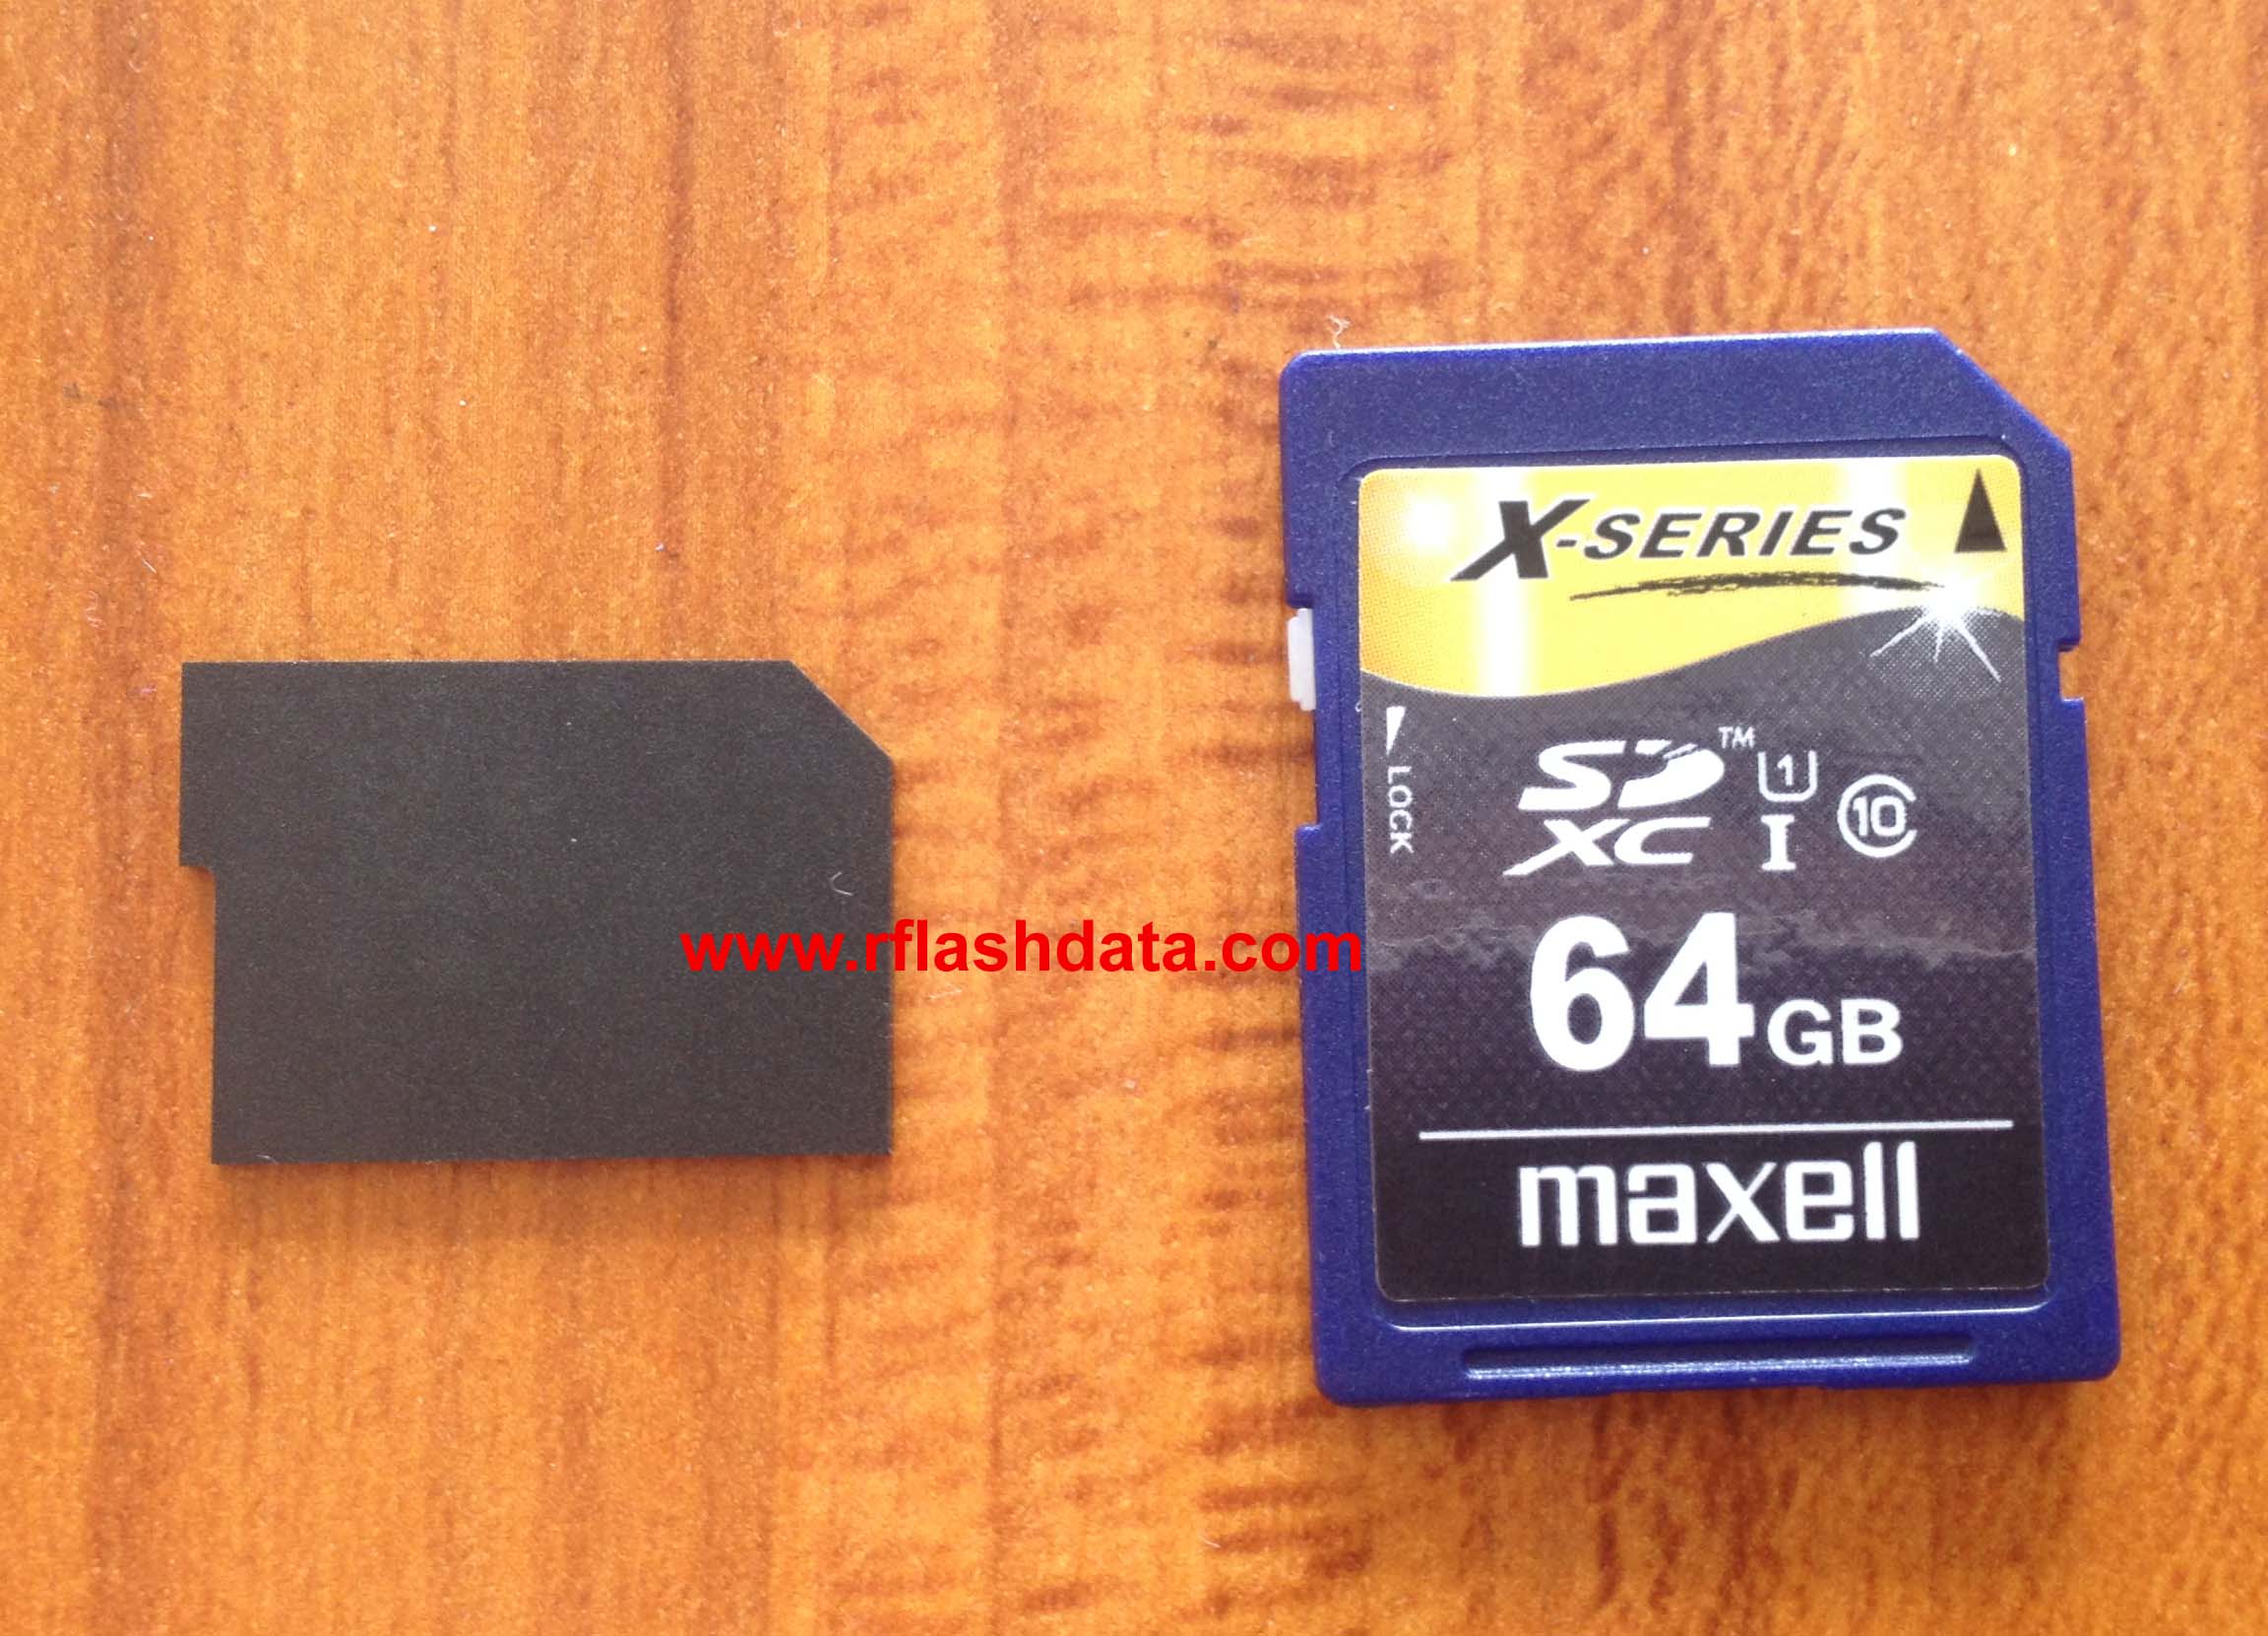 Maxell X-Series 64GB SD card